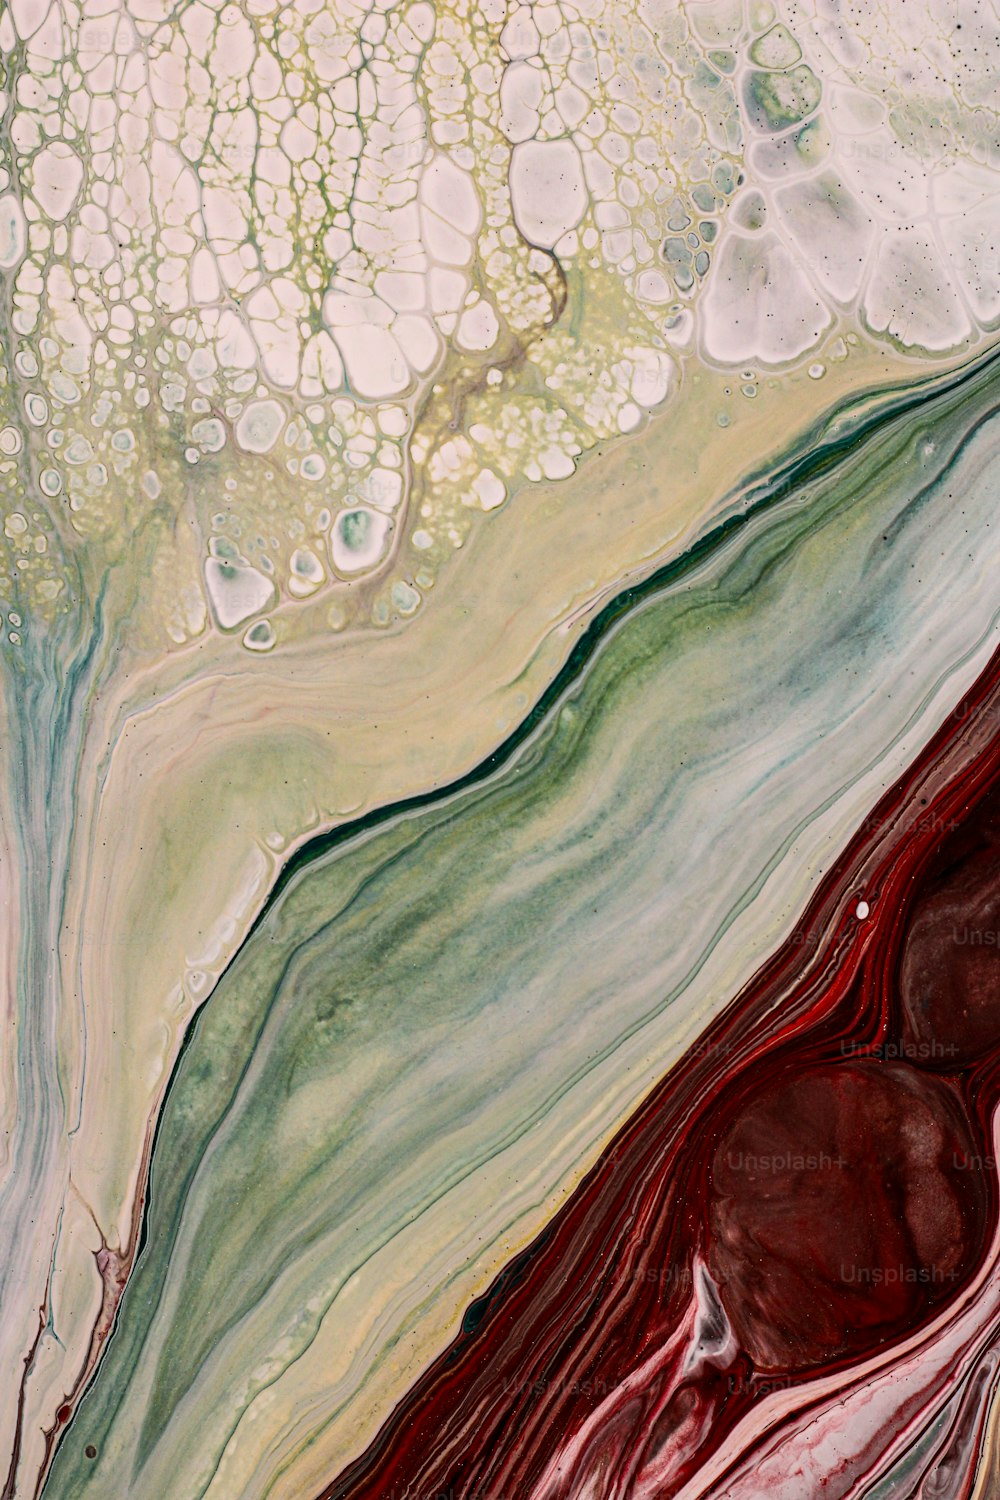 Una pintura abstracta con colores rojo, verde y blanco